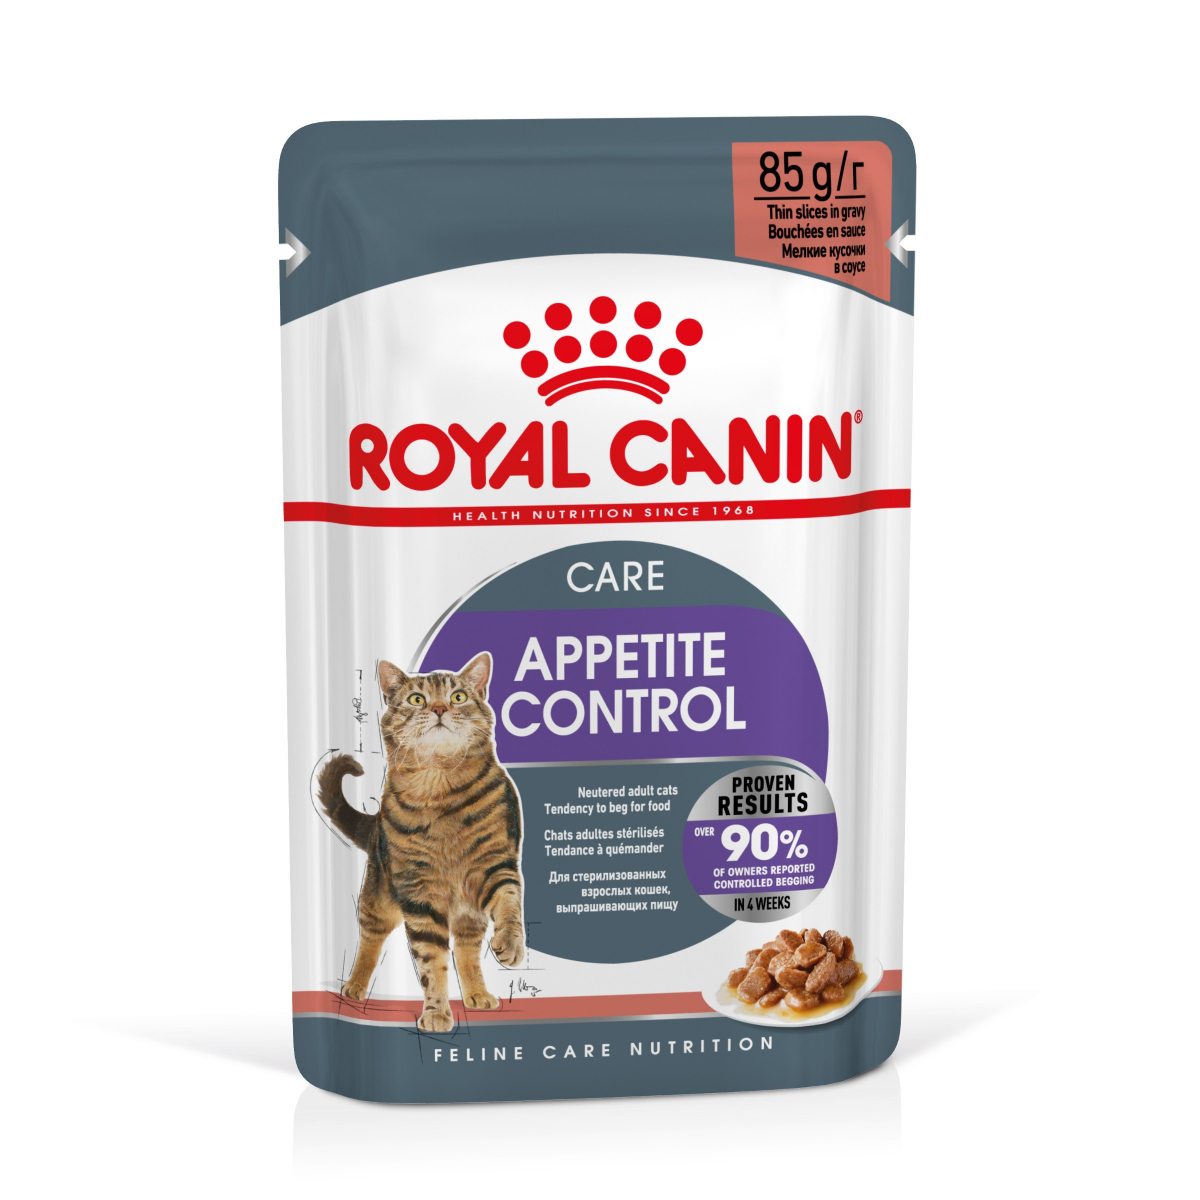 Royal Canin Urinary S/O Mousse/Paté 12x85g - Boites, pâtées et sachets Chat  - Croquettes & alimentation Royal Canin Veterinary Diet